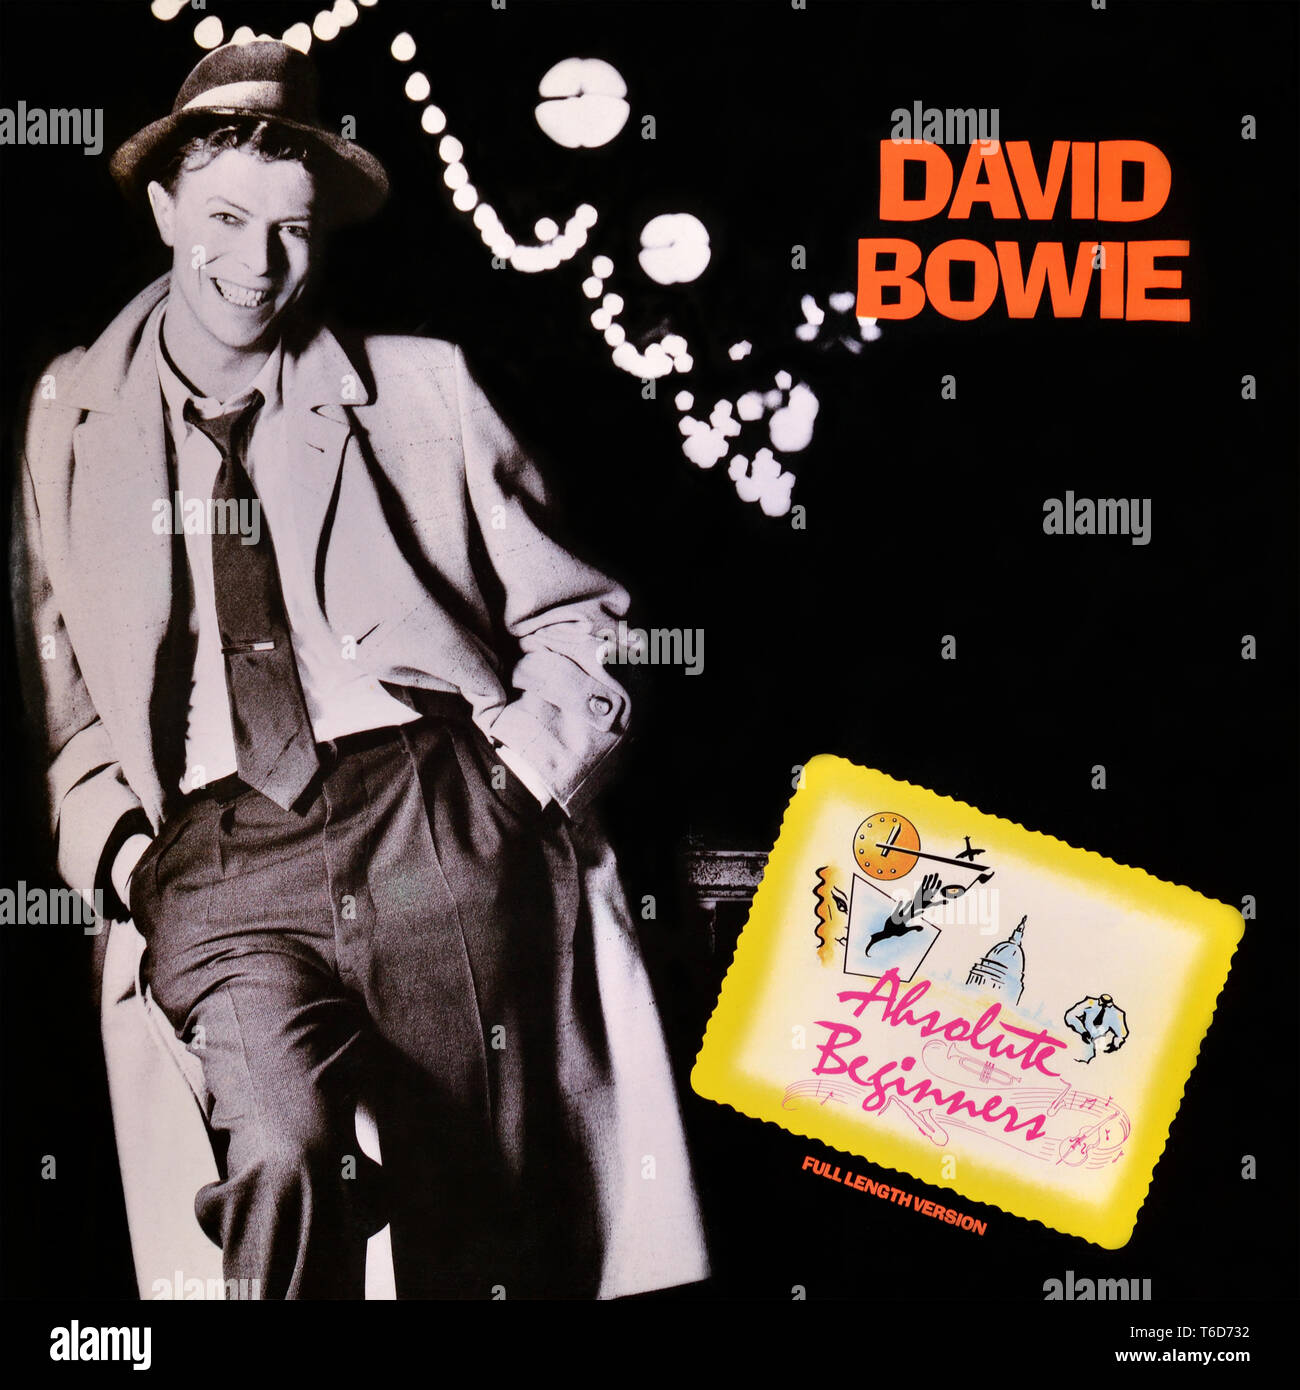 David Bowie - pochette originale de l'album en vinyle - Absolute Beginners - 1986 Banque D'Images